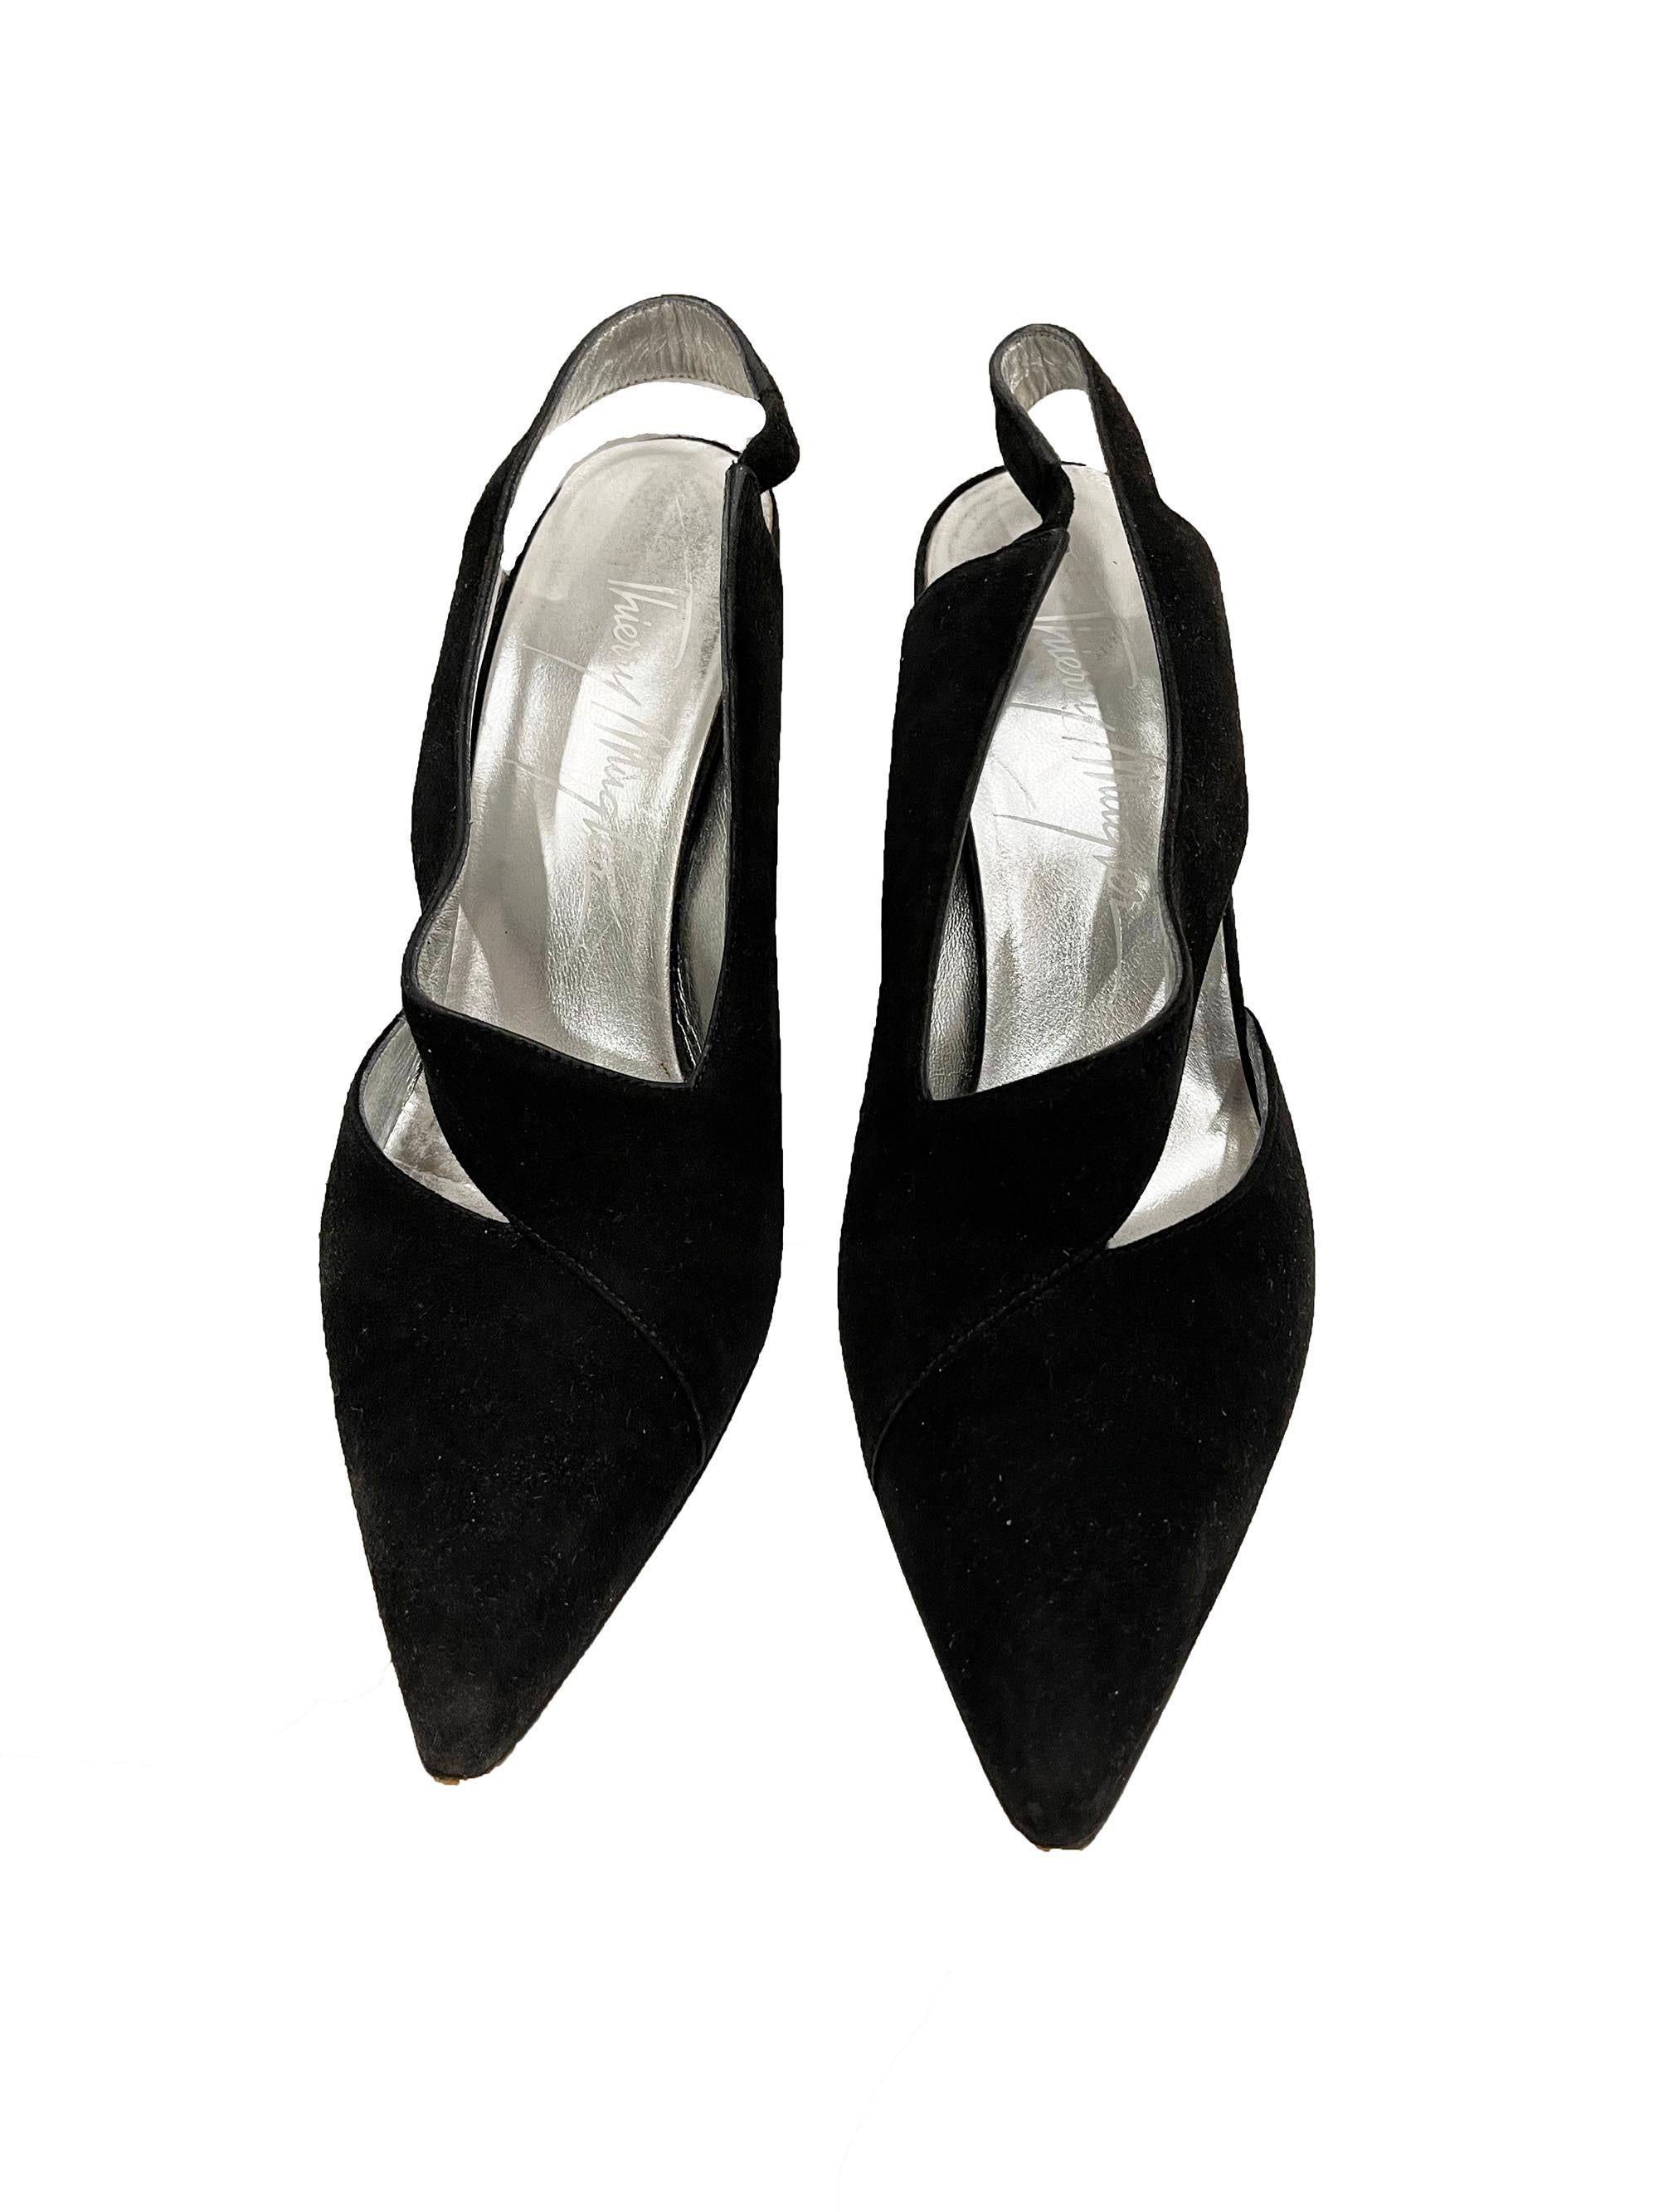 Thierry Mugler Heels mit Absatz Gr. 8
Zustand: Gut, einige allseitige Gebrauchsspuren
Schuhe können 1/2 Größe kleiner ausfallen aufgrund von Vintage-Größen